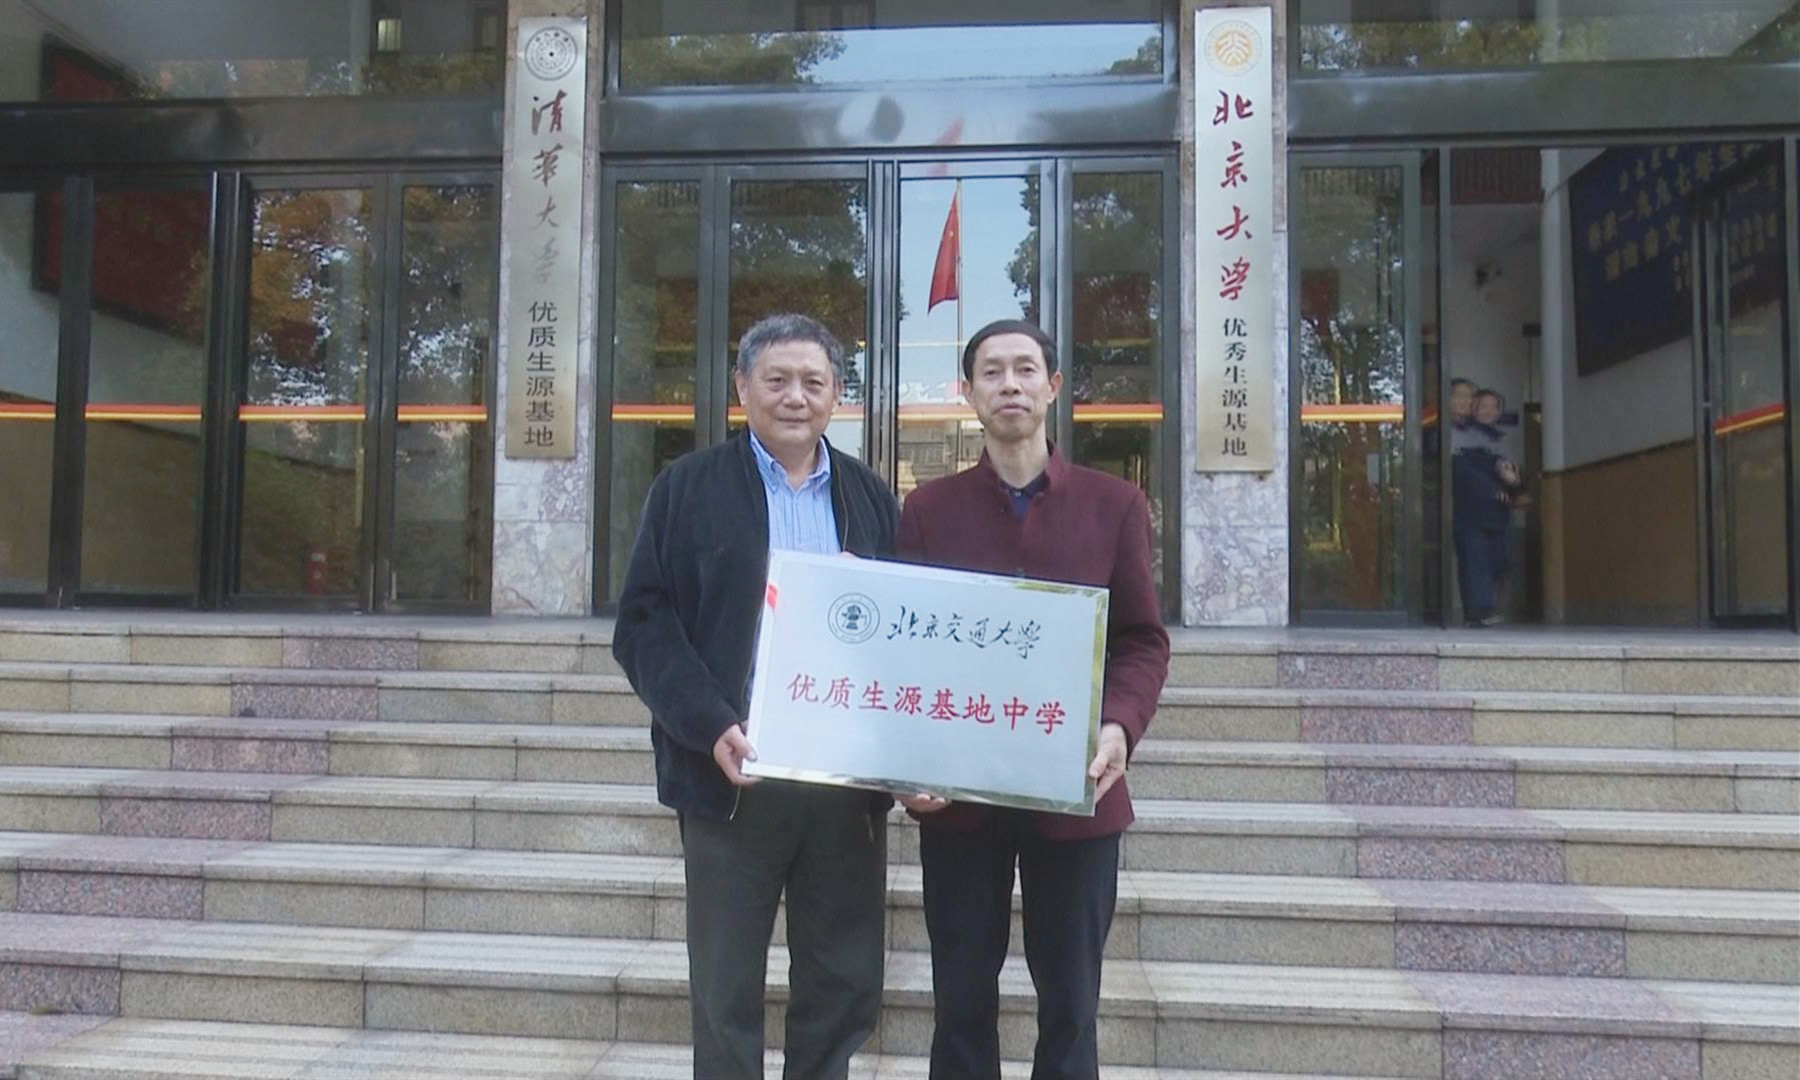 冷水江市一中被授予“北京交通大学优质生源基地中学”牌匾